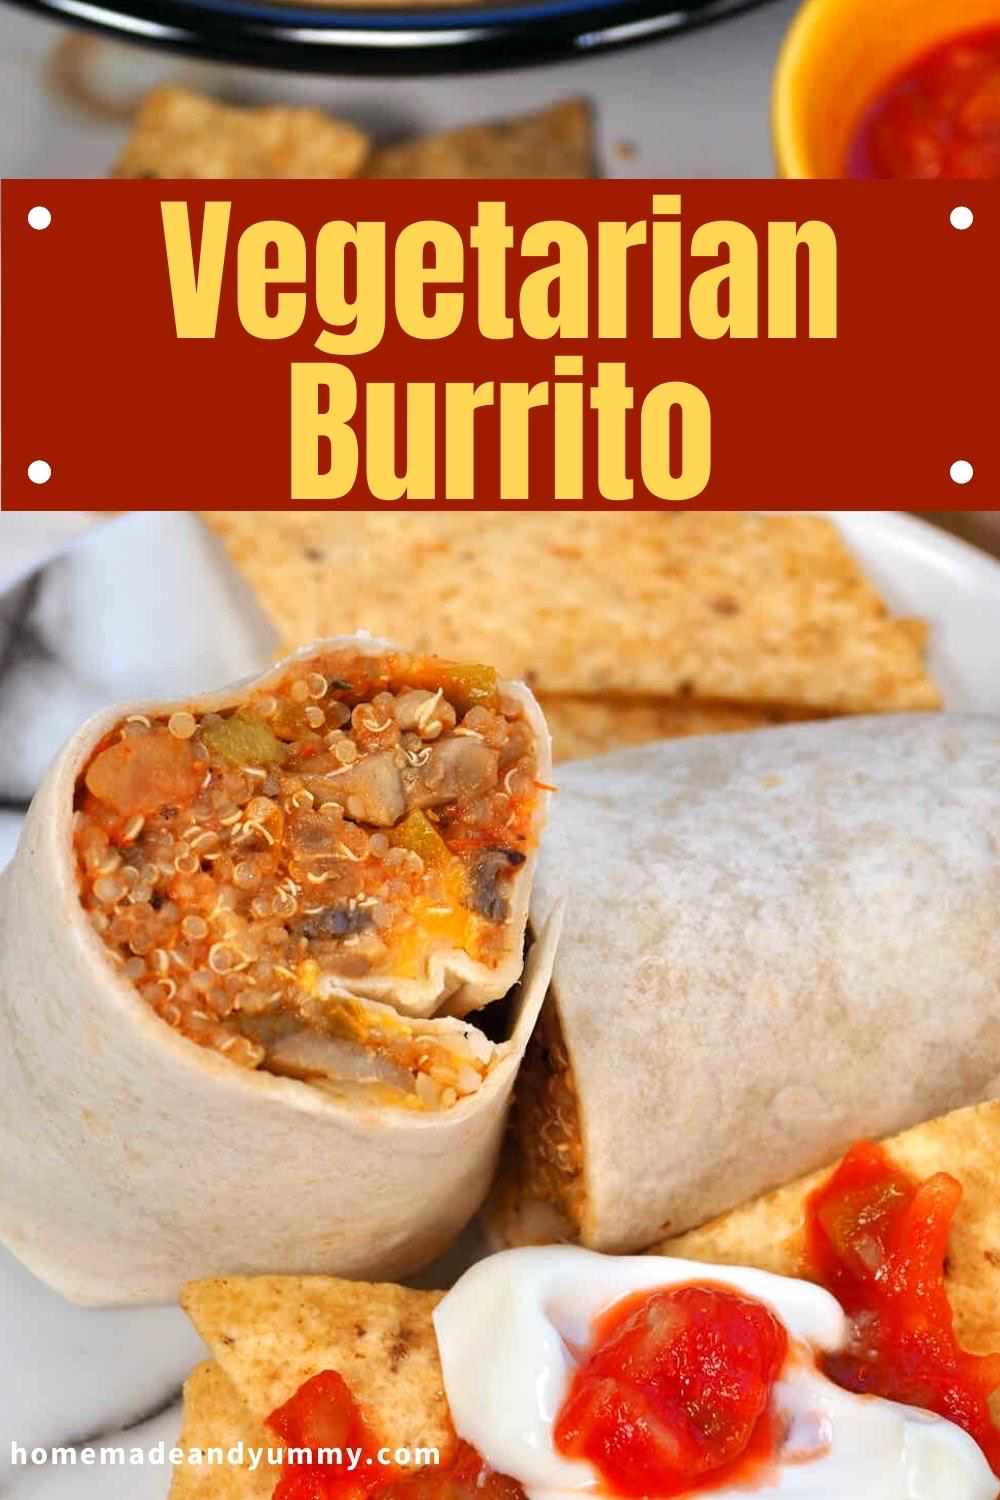 Vegetarian Burrito pin.